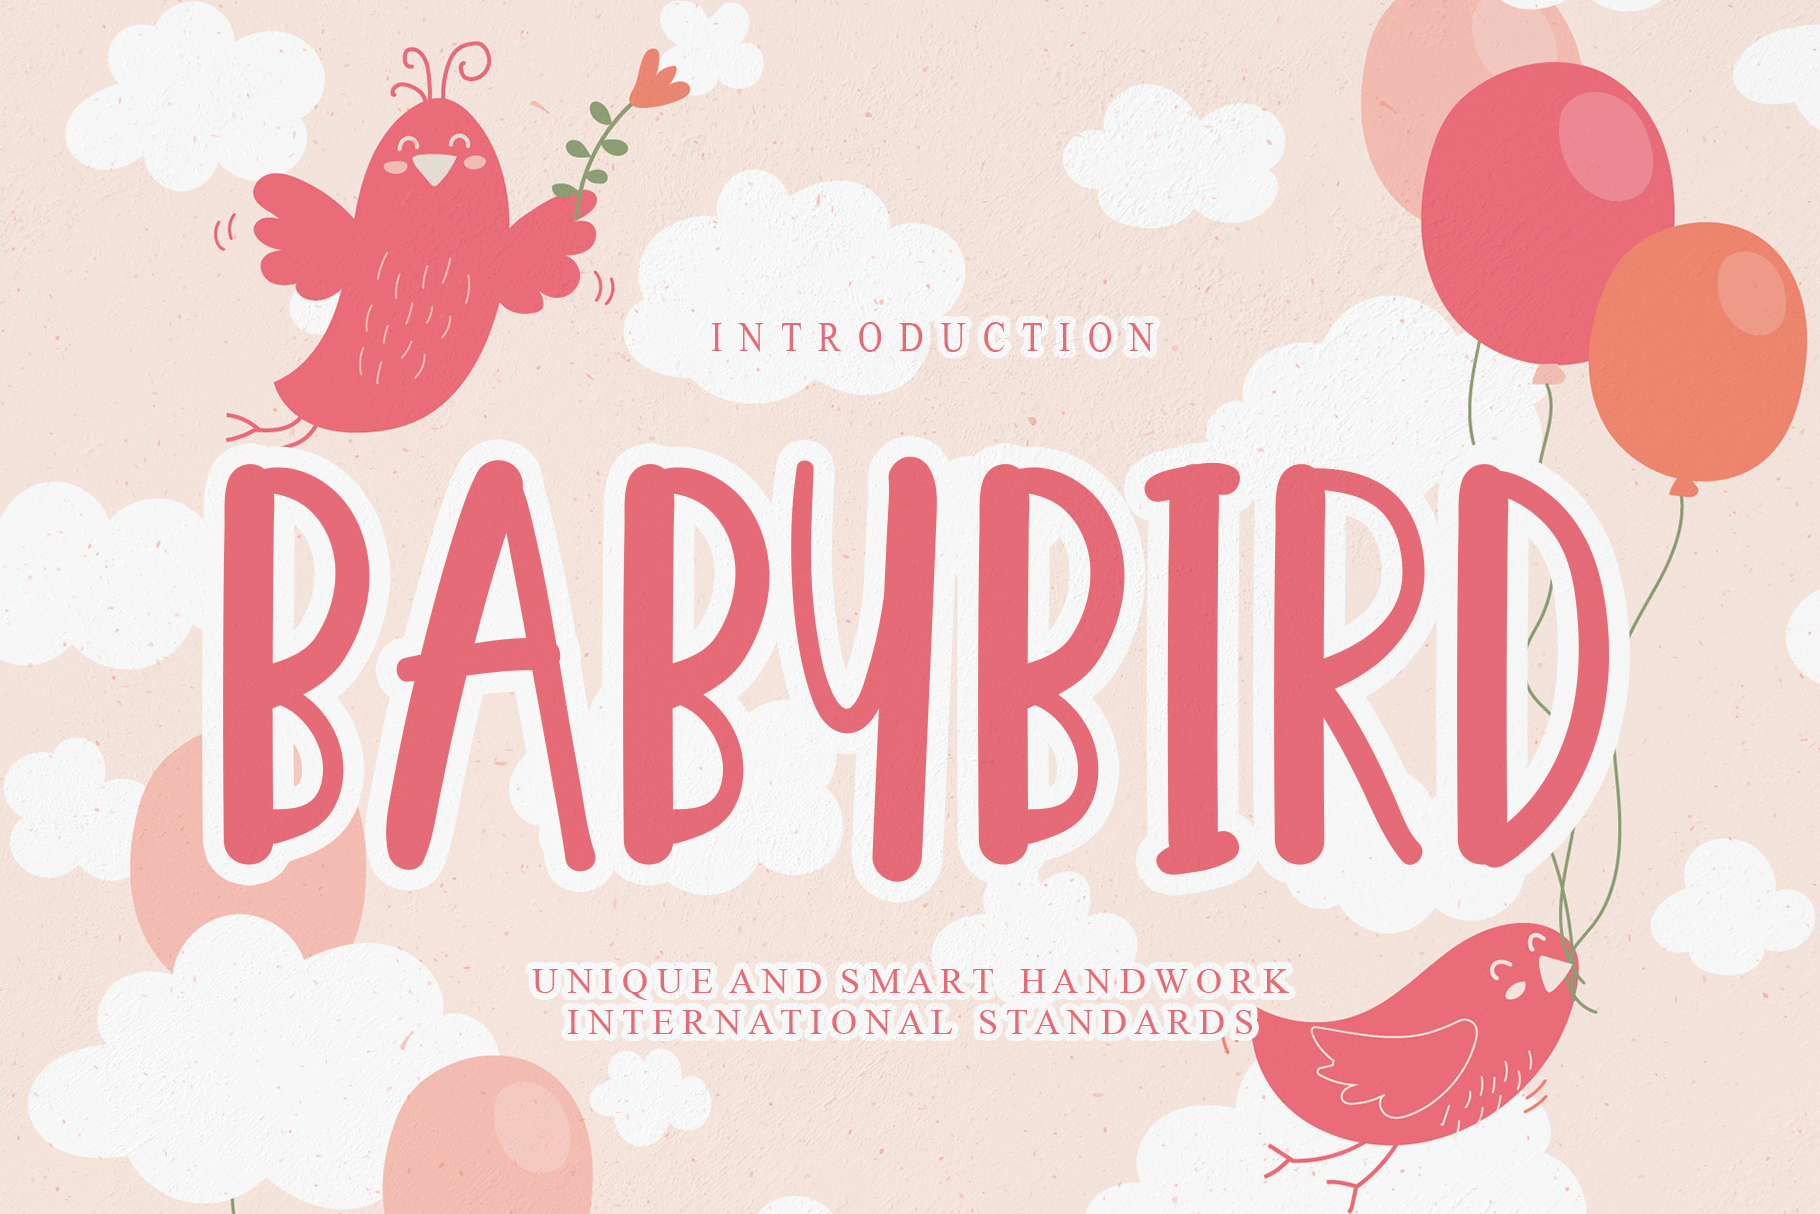 Babybird